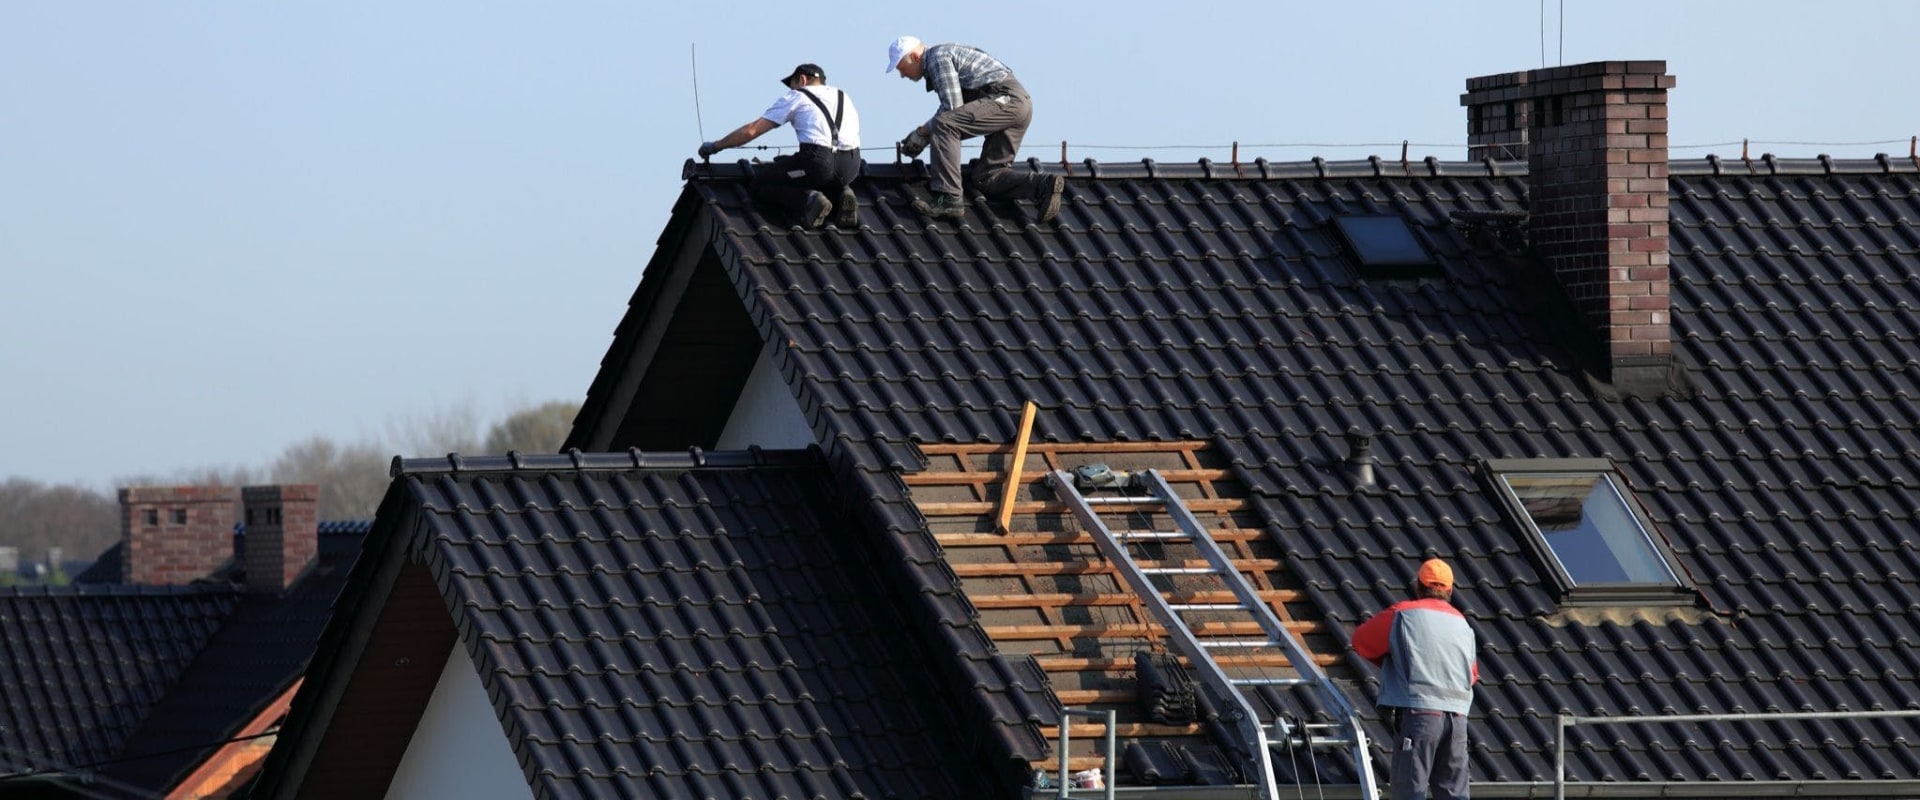 Hoeveel dakdekkers vallen er jaarlijks van het dak?